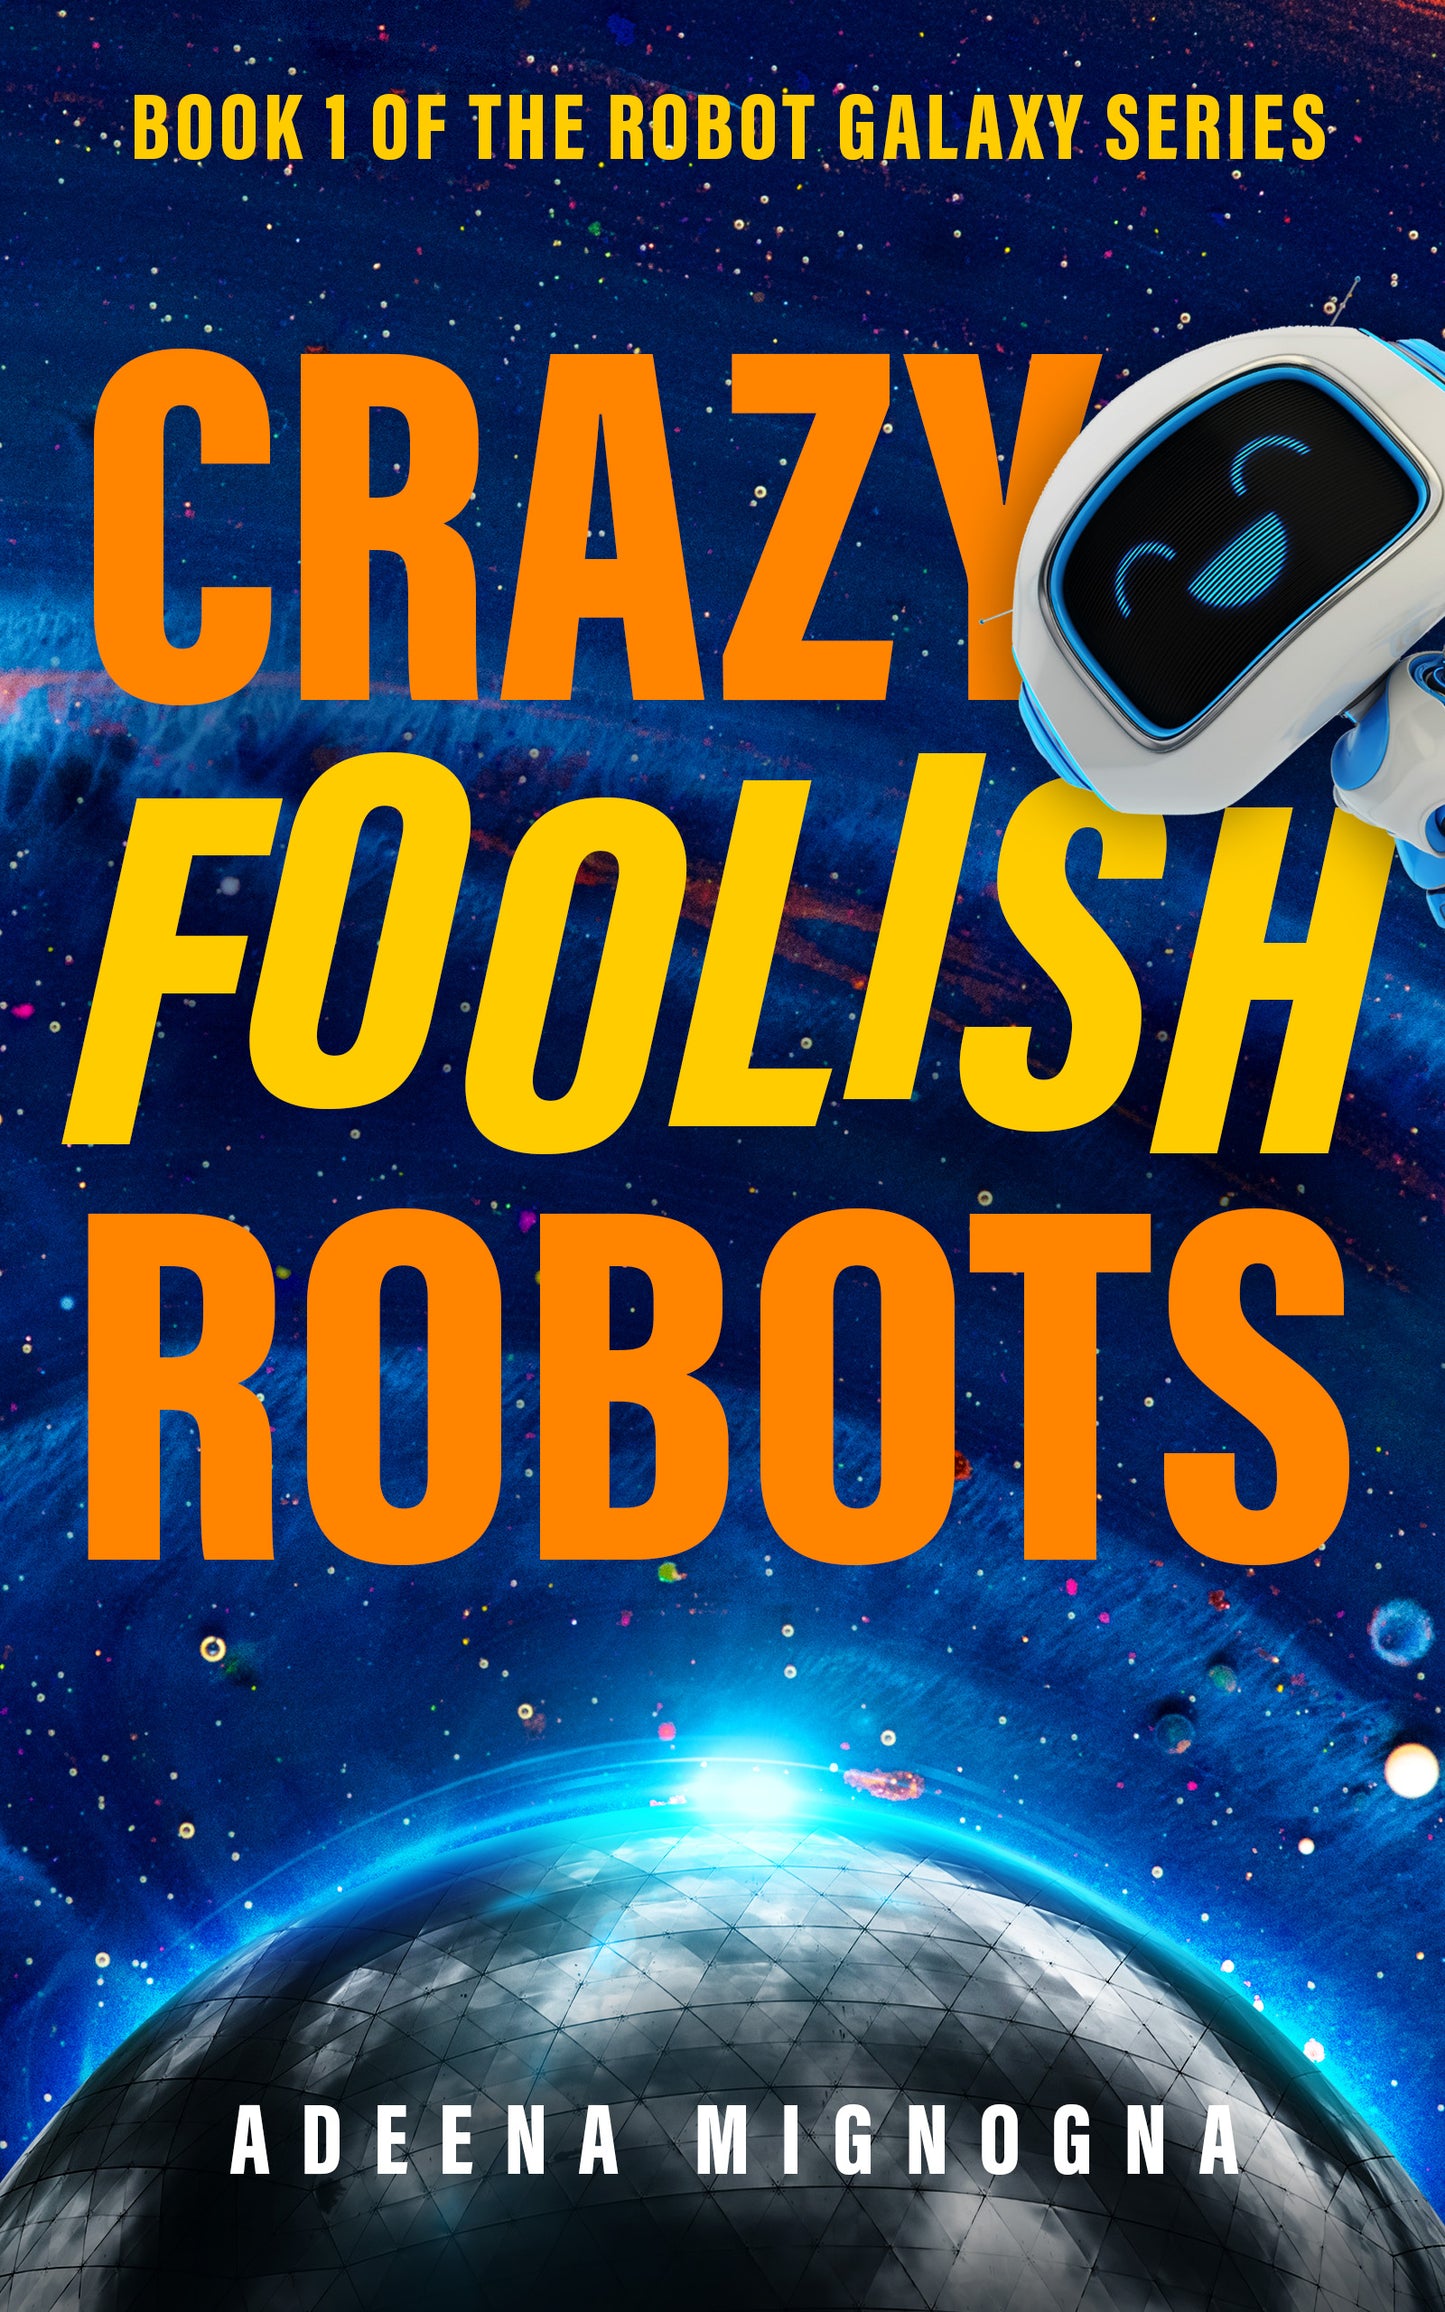 Crazy Foolish Robots - Autographed - Paperback